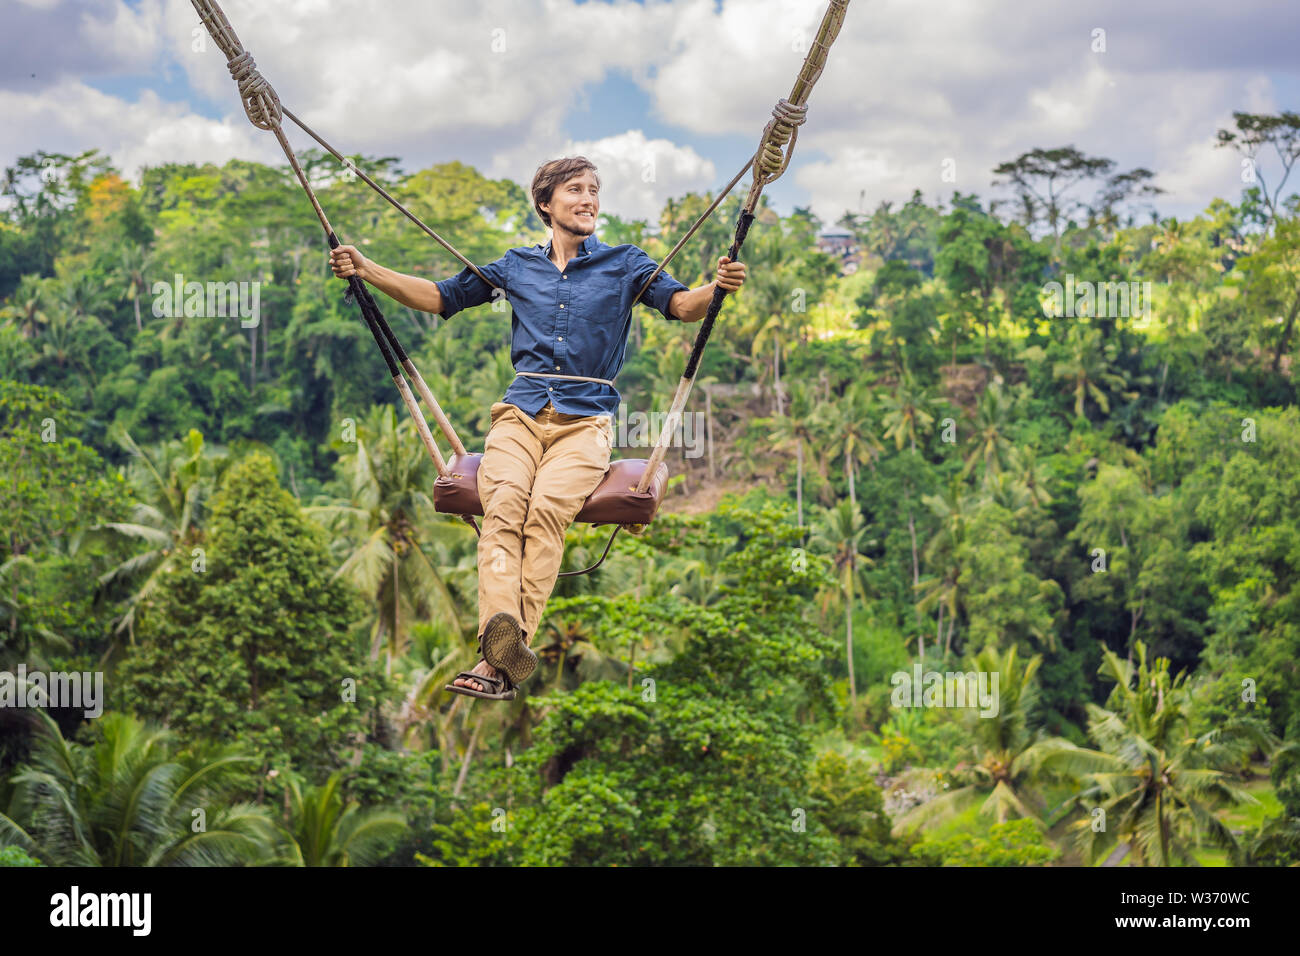 Junger Mann im Dschungel Regenwald der Insel Bali, Indonesien schwingen.  Swing in den Tropen. Schaukeln - Tendenz von Bali Stockfotografie - Alamy